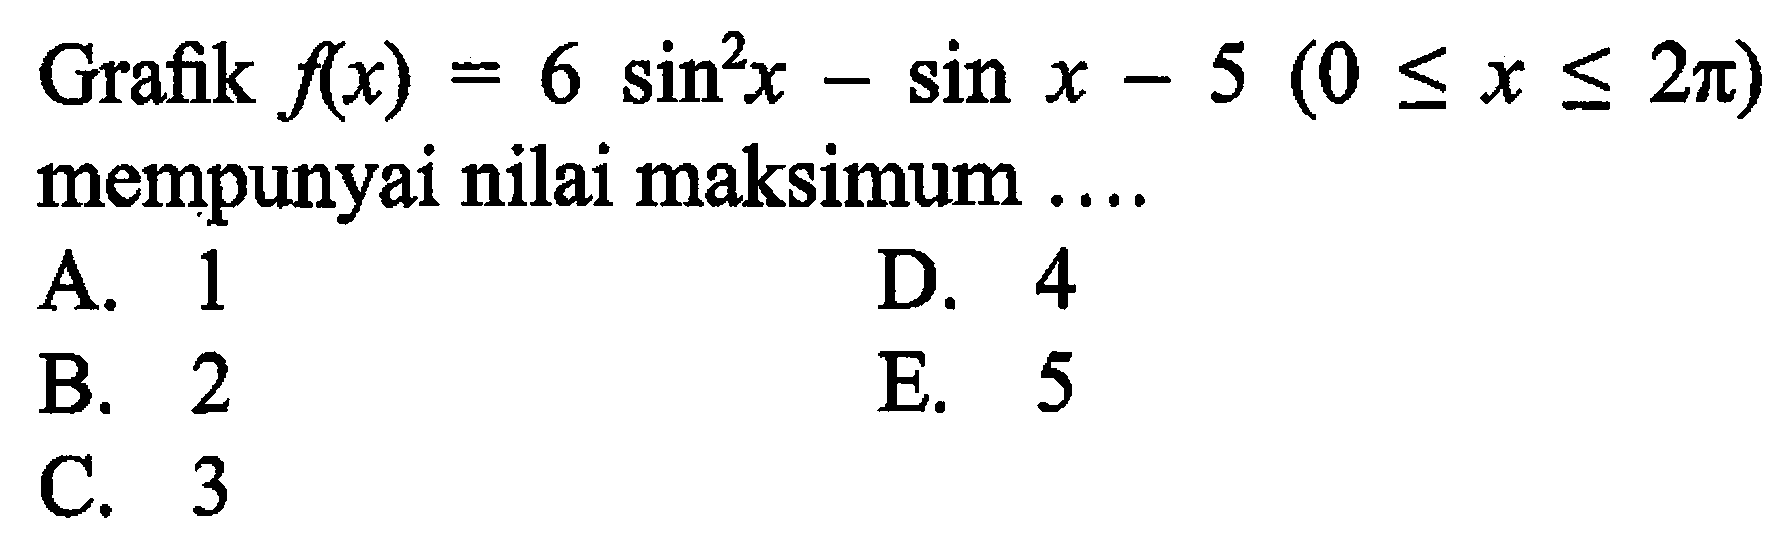 Grafik f(x) = 6 sin^2 x - sin x - 5 (0 <= x <= 2 pi) mempunyai nilai maksimum